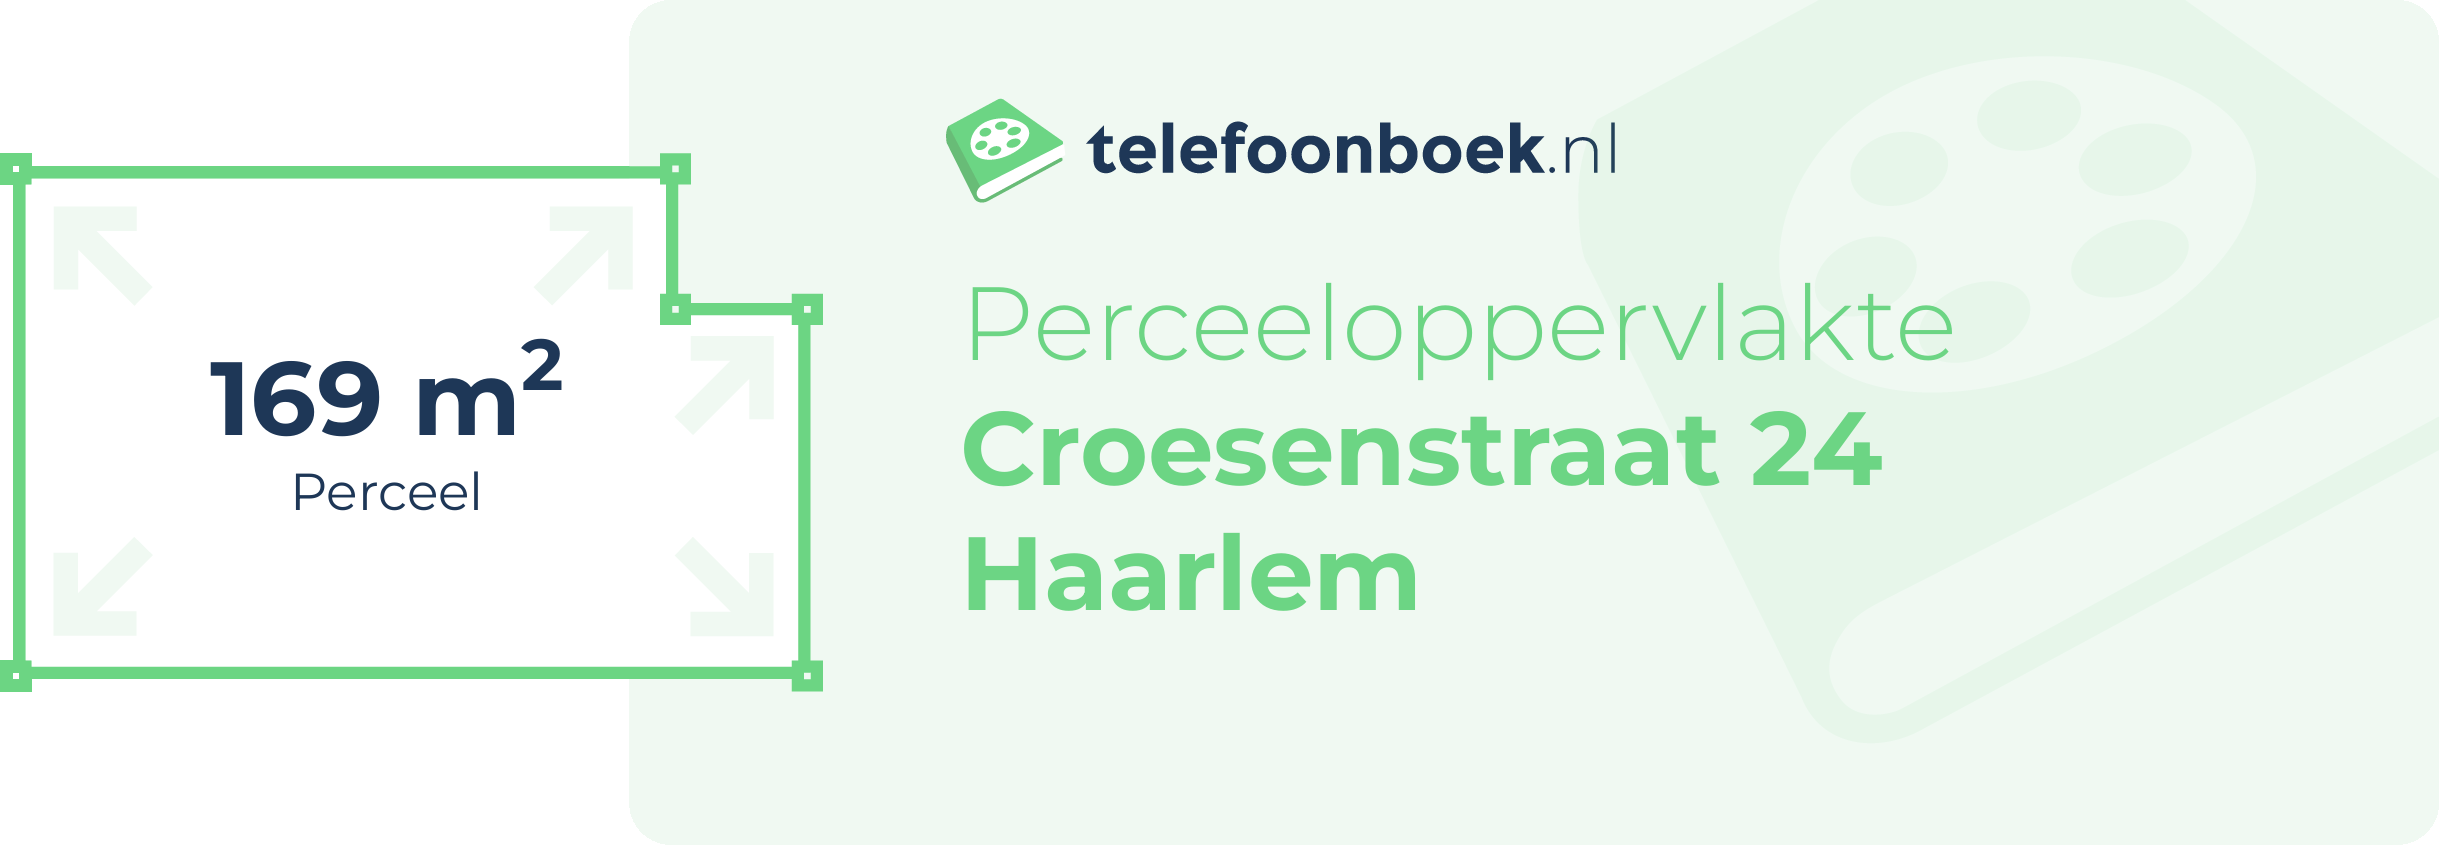 Perceeloppervlakte Croesenstraat 24 Haarlem